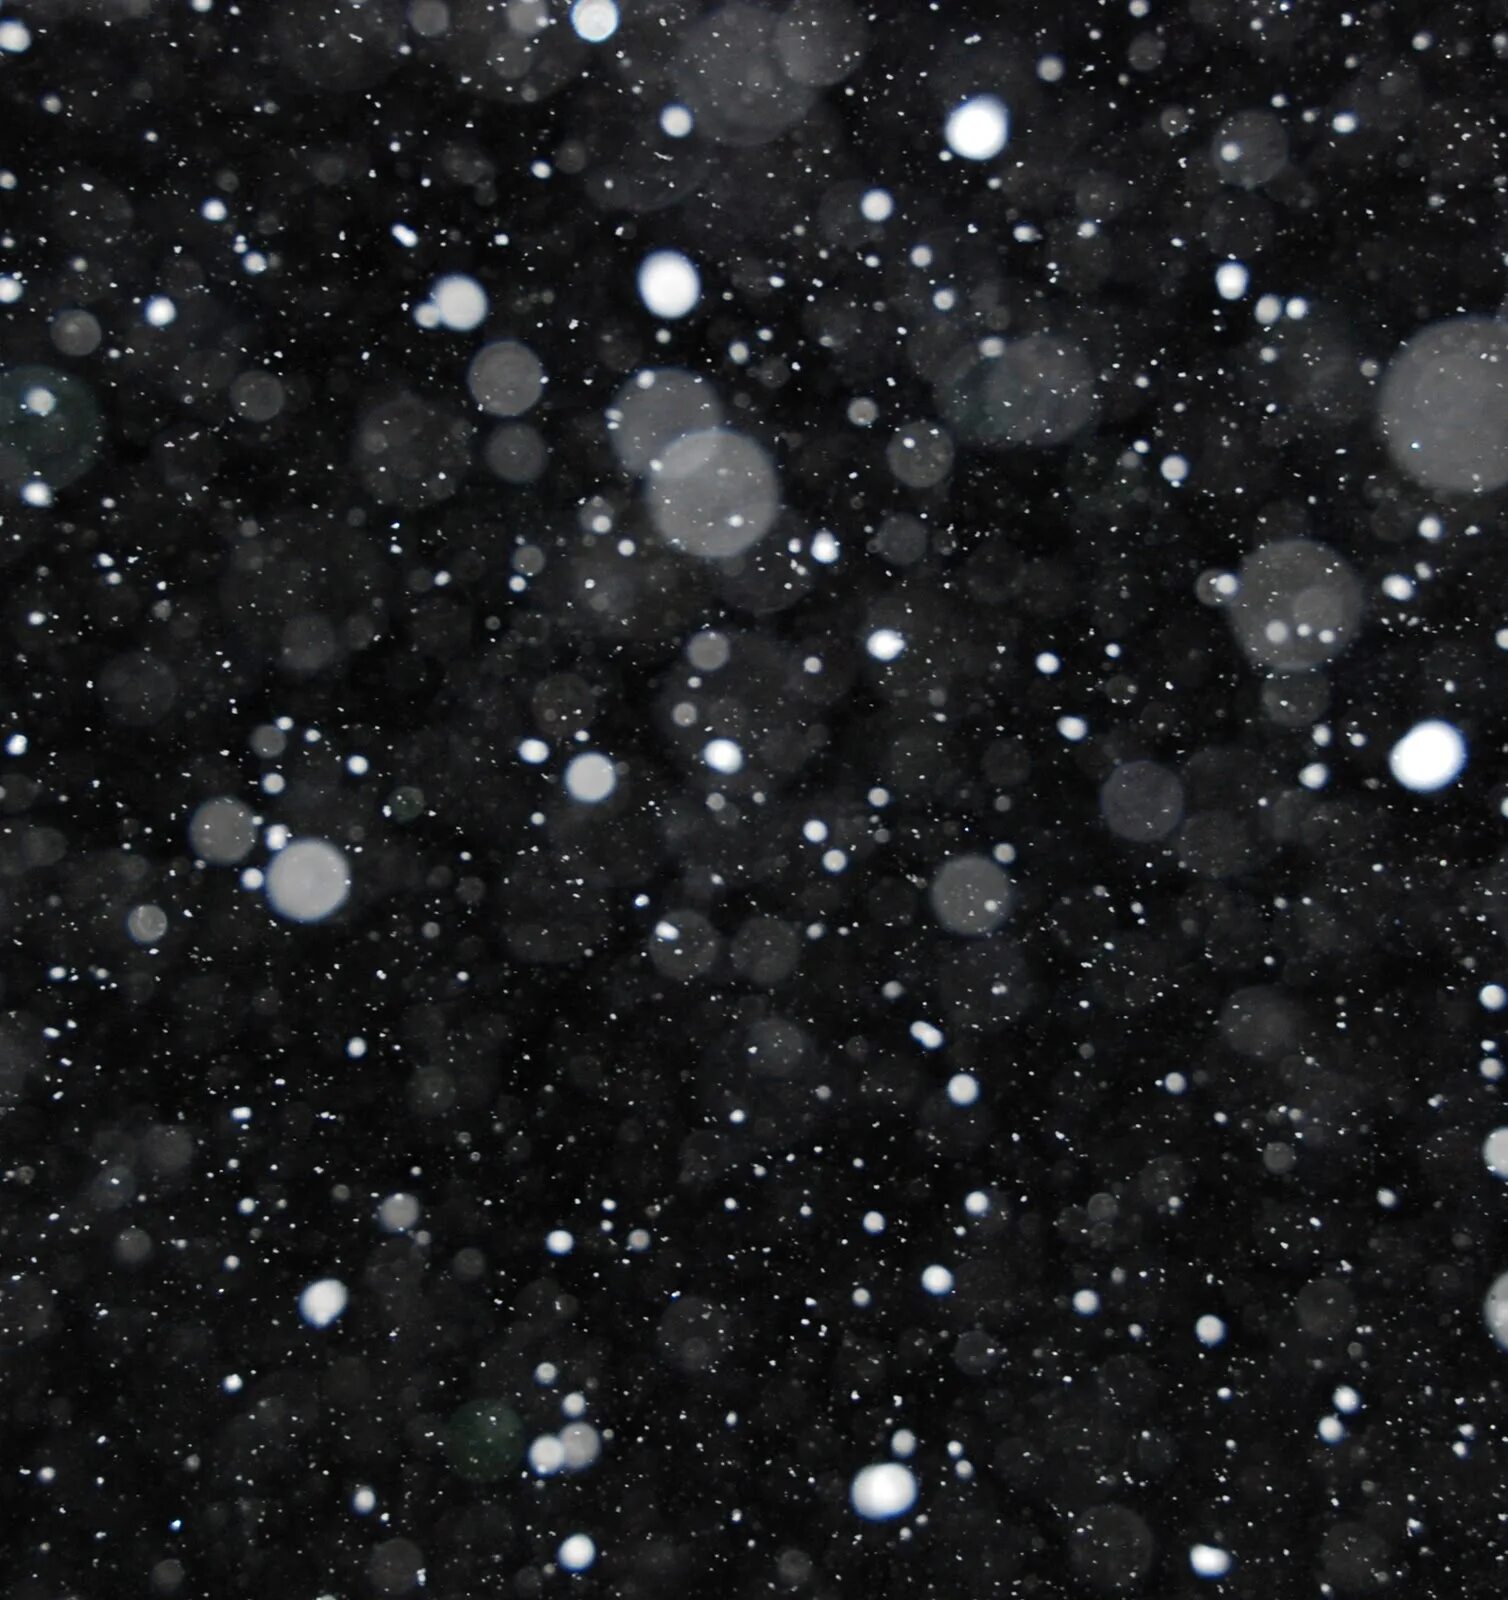 Снег текстура. Эффект снега. Хлопья снега на черном фоне. Снег на черном фоне. Падающий снег позволяет узреть